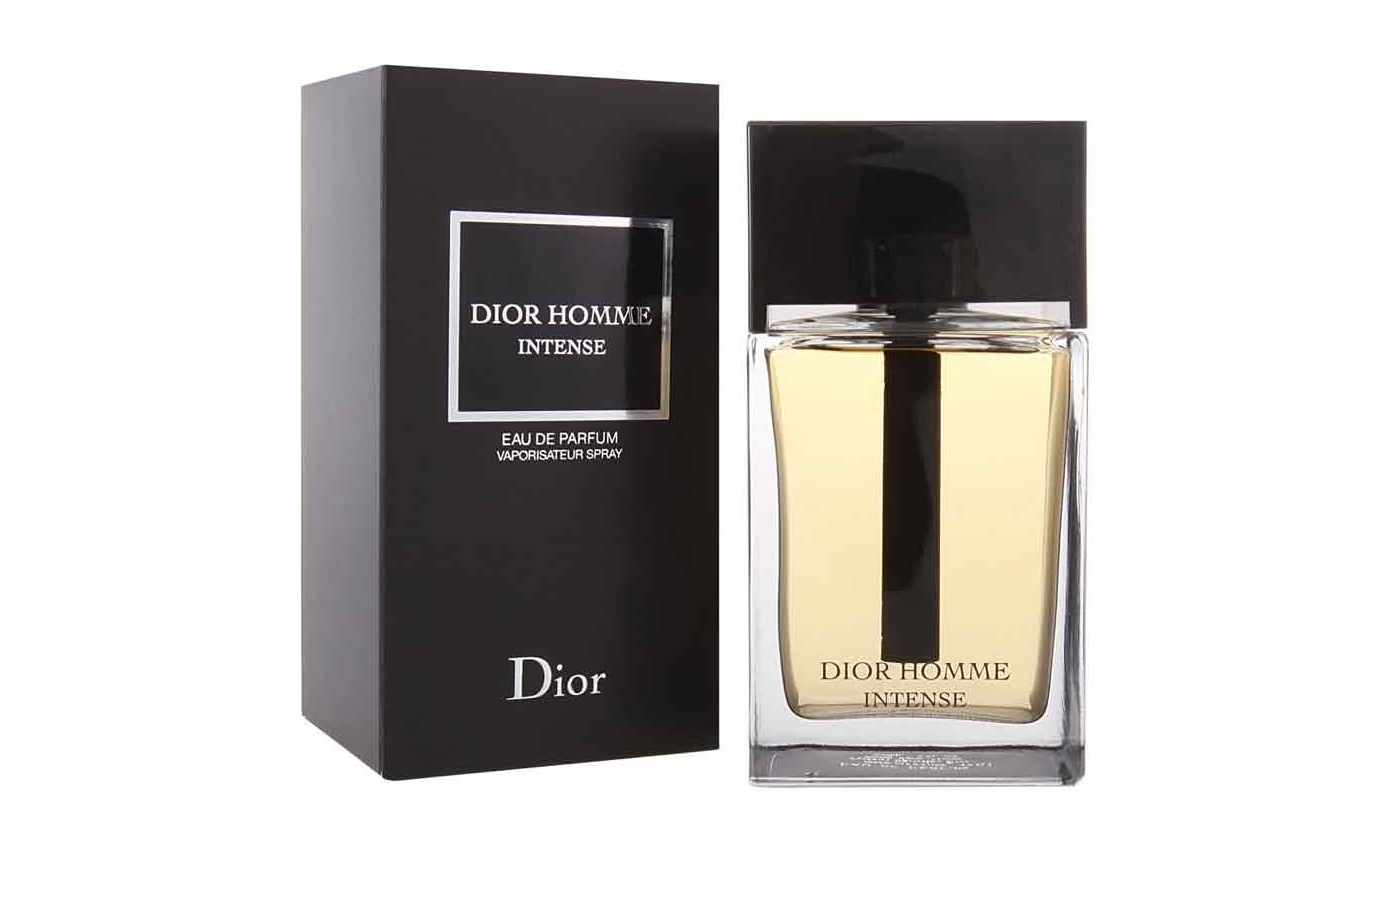 Dior Homme Intense является новой верси­ей аромата Dior Homme, кото­рую запустил бренд Dior. В осно­ве парфюмерной композиции ноты лава­нды, ириса, ванили. Аро­мат создан для стильного мужчи­ны, который излучает уве­ренность в себе и который не зна­ет компромиссов при реше­нии сложных задач. Все должно быть по его пра­вилам, ведь Он законода­тель во всем — в деловом мире, моде, любви, а аро­мат для него — обязательное, нео­тъемлемое дополнение к Его образу 